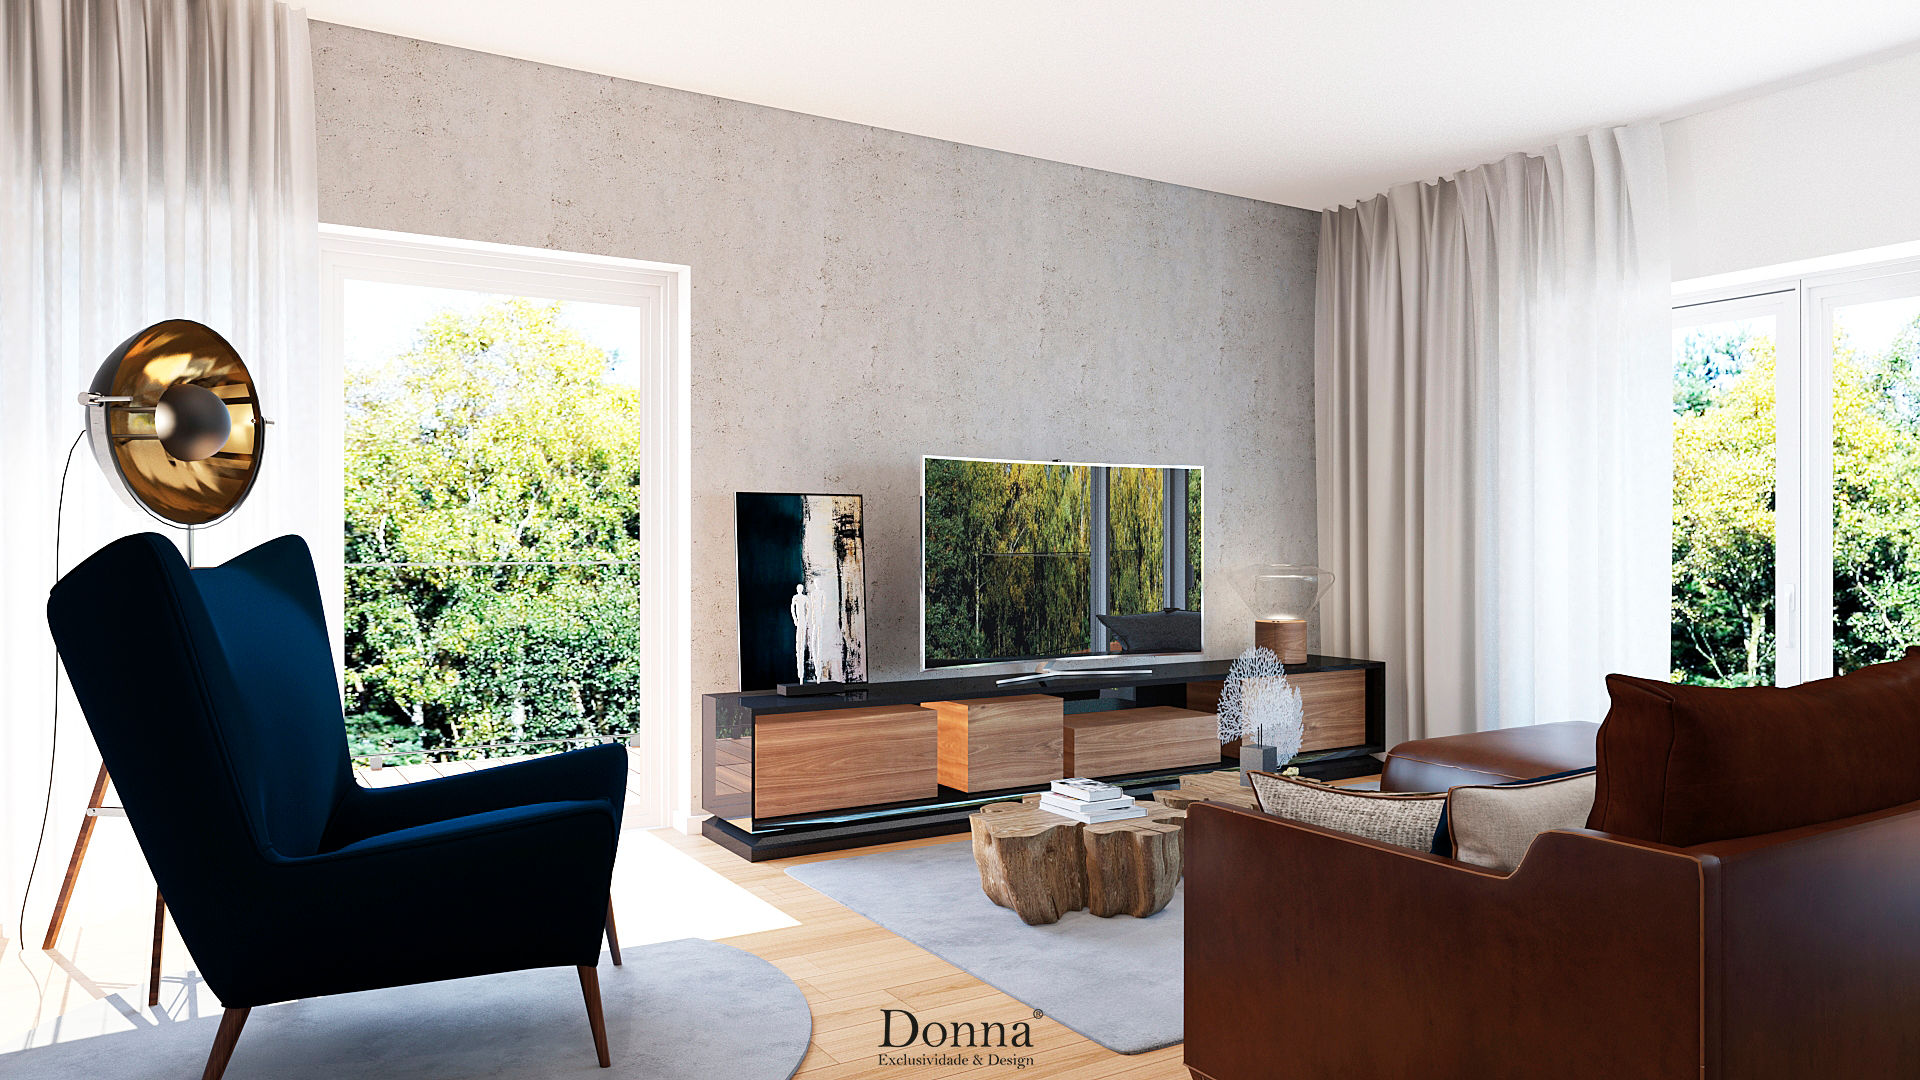 Apartamento Lisboa , Donna - Exclusividade e Design Donna - Exclusividade e Design Вітальня